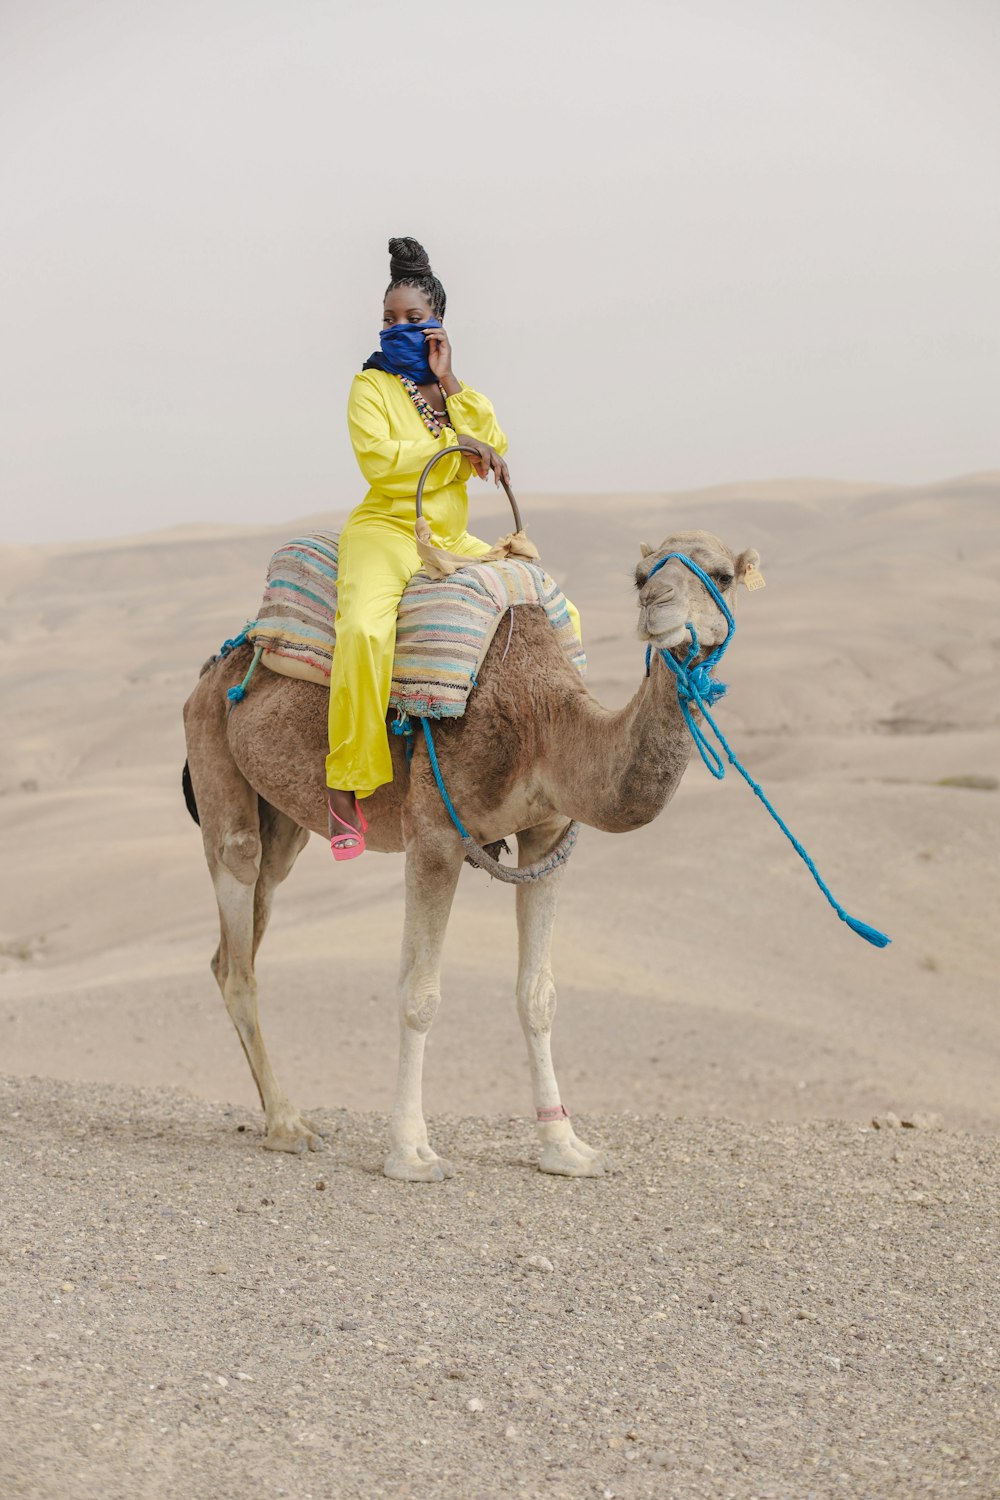 a person riding a camel